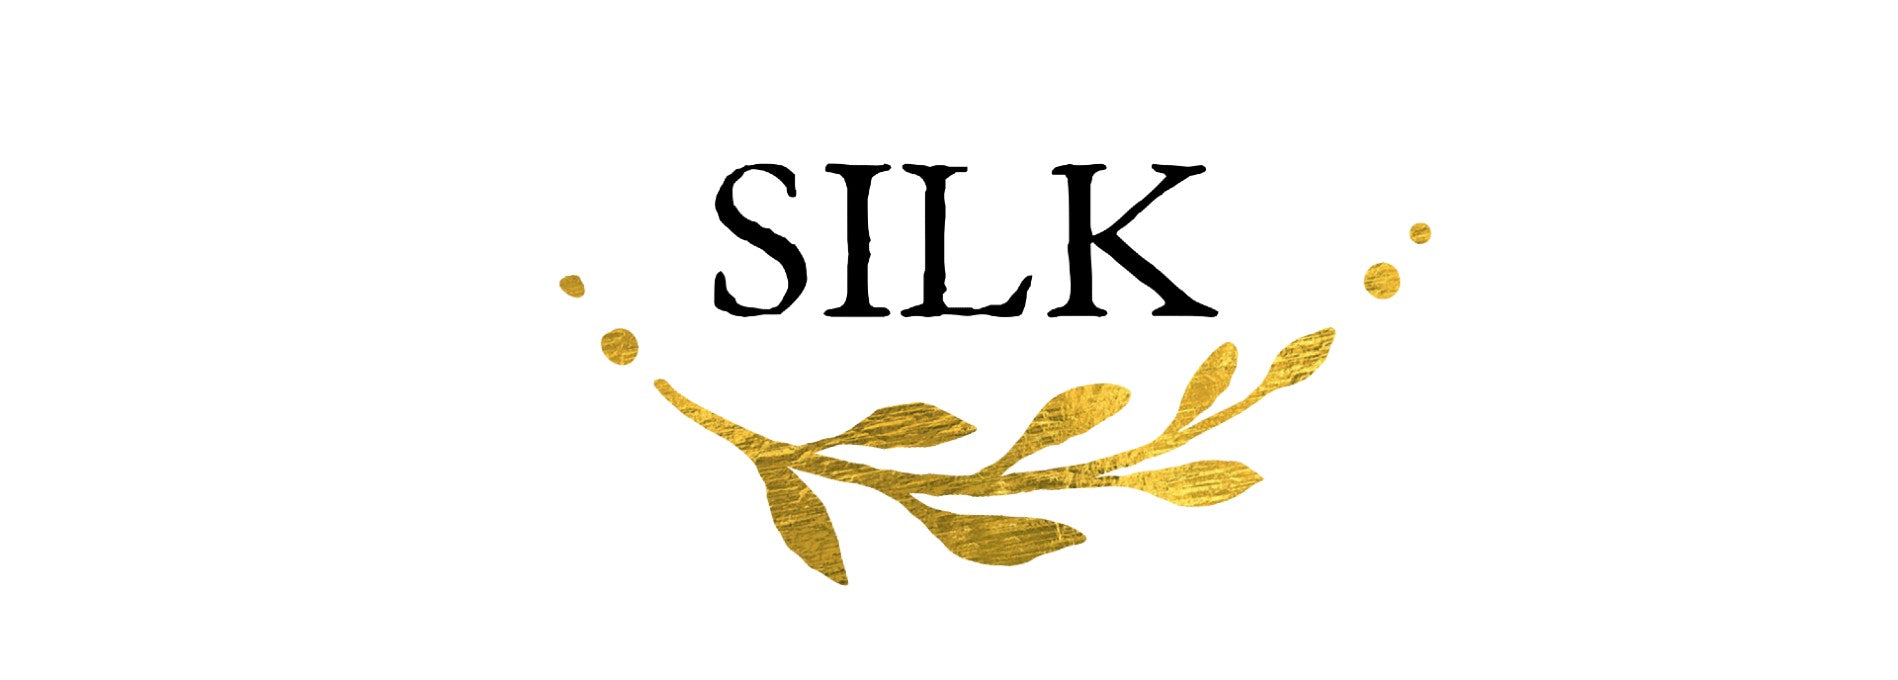 BioSilk Silk Therapy with Natural Coconut Oil - BioSilk Hair Care